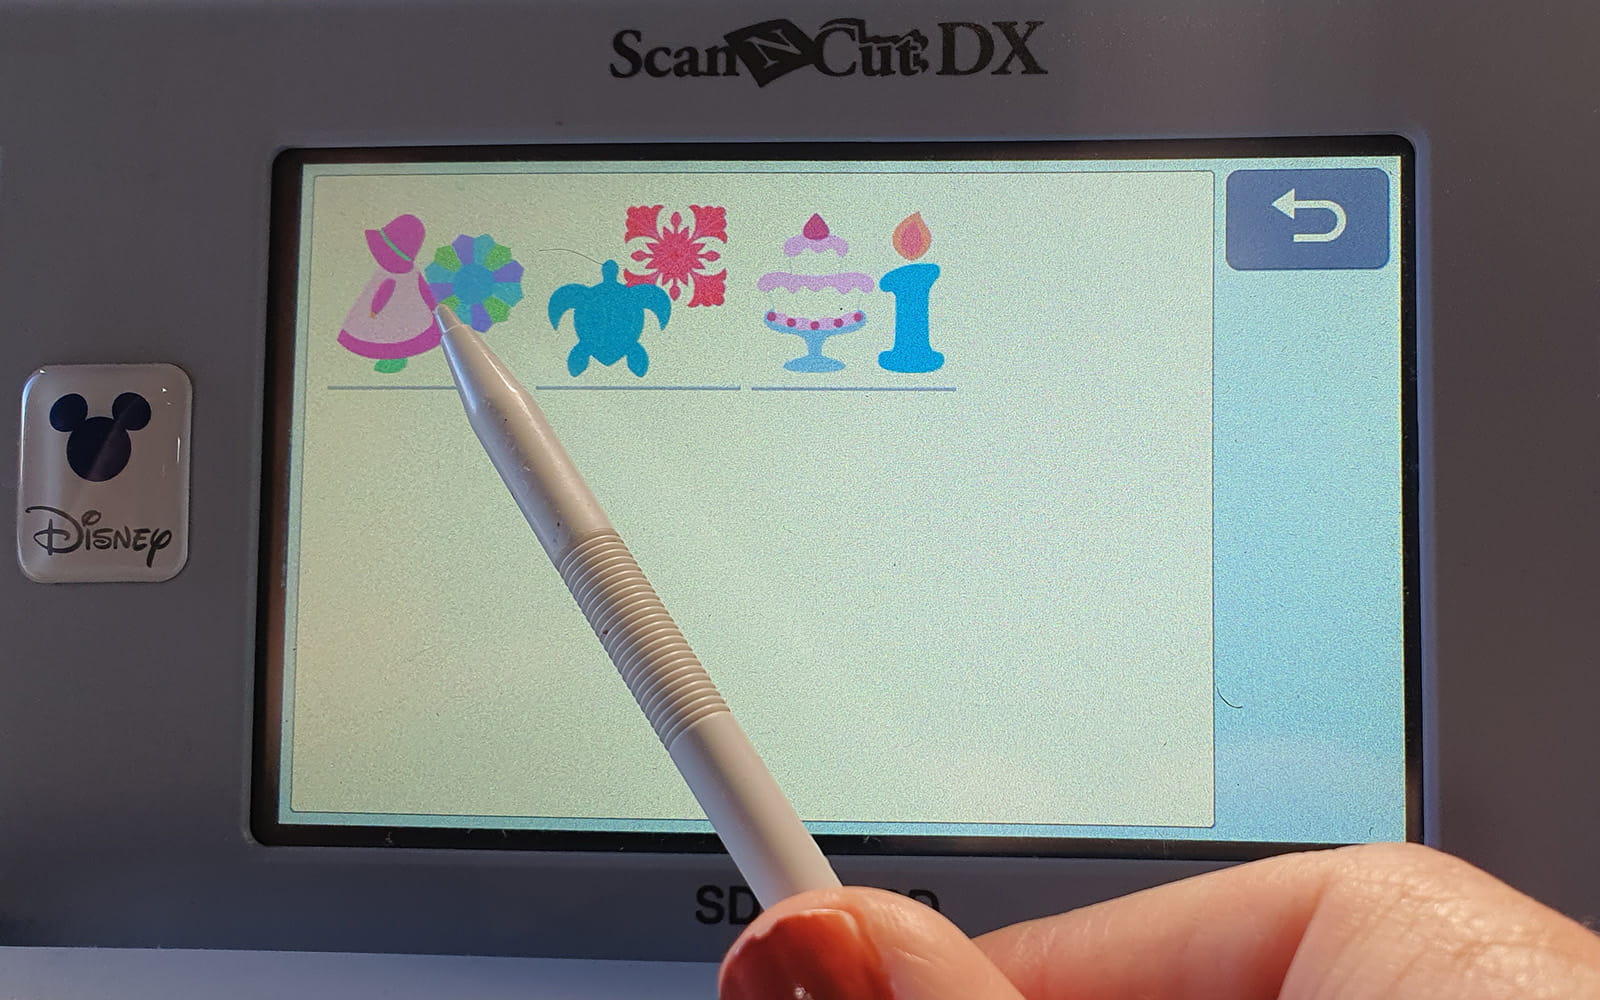 ScanNCut DX beeldscherm en stylus